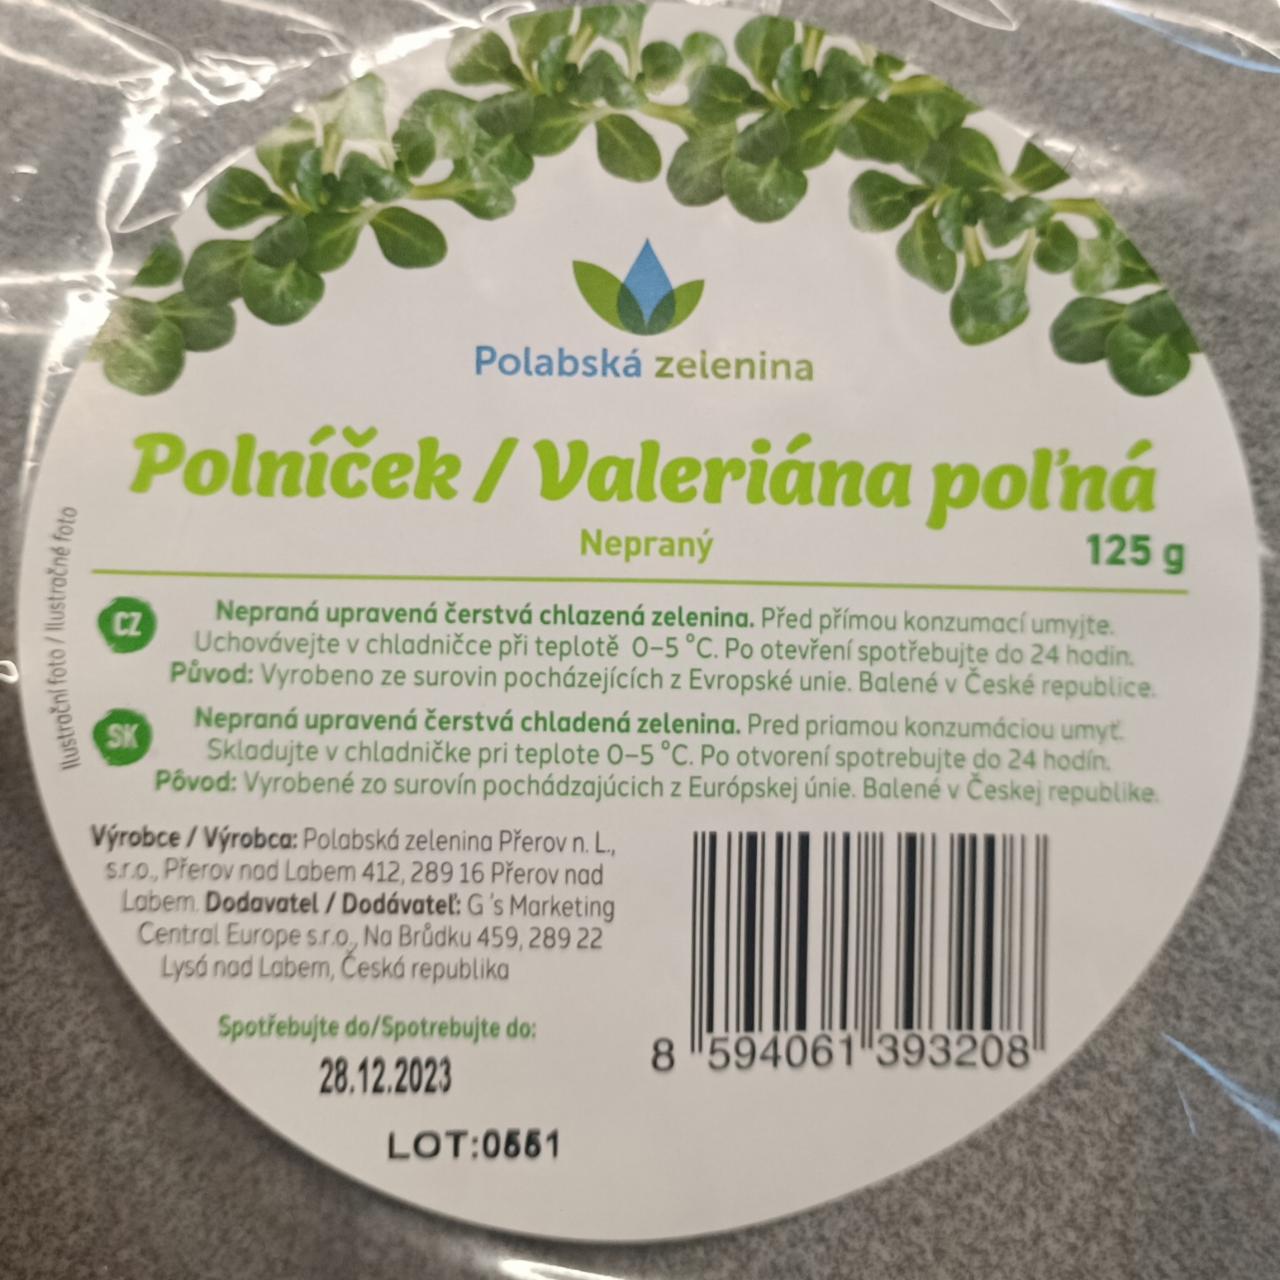 Fotografie - Polníček/Valeriána polná Polabská zelenina